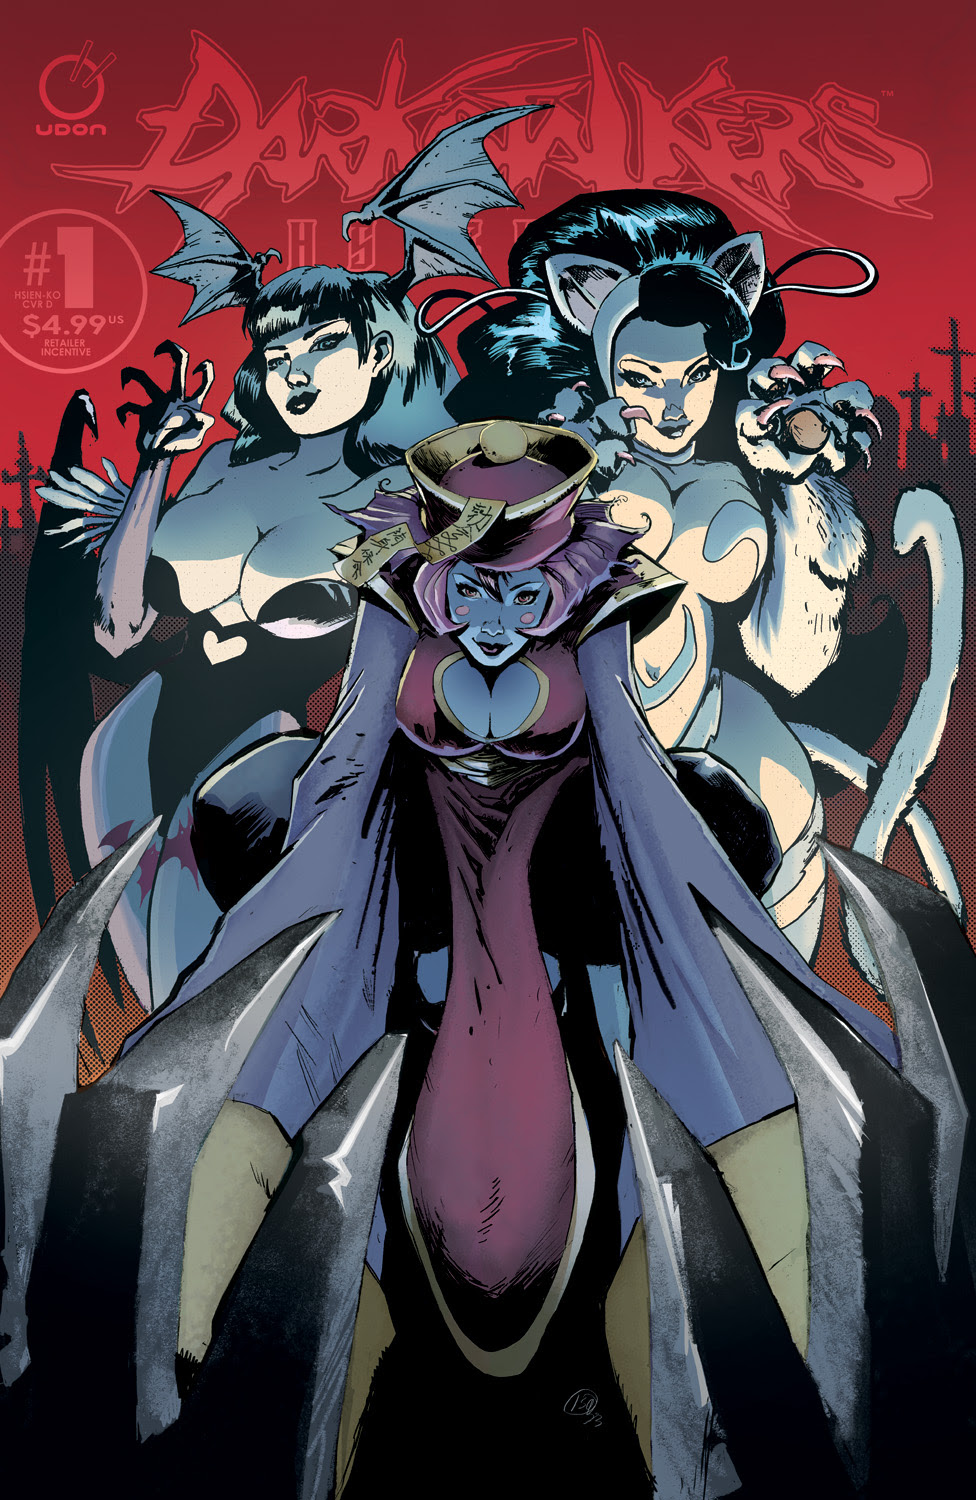 Darkstalkers: Hsien-Ko Comic Debuts in October